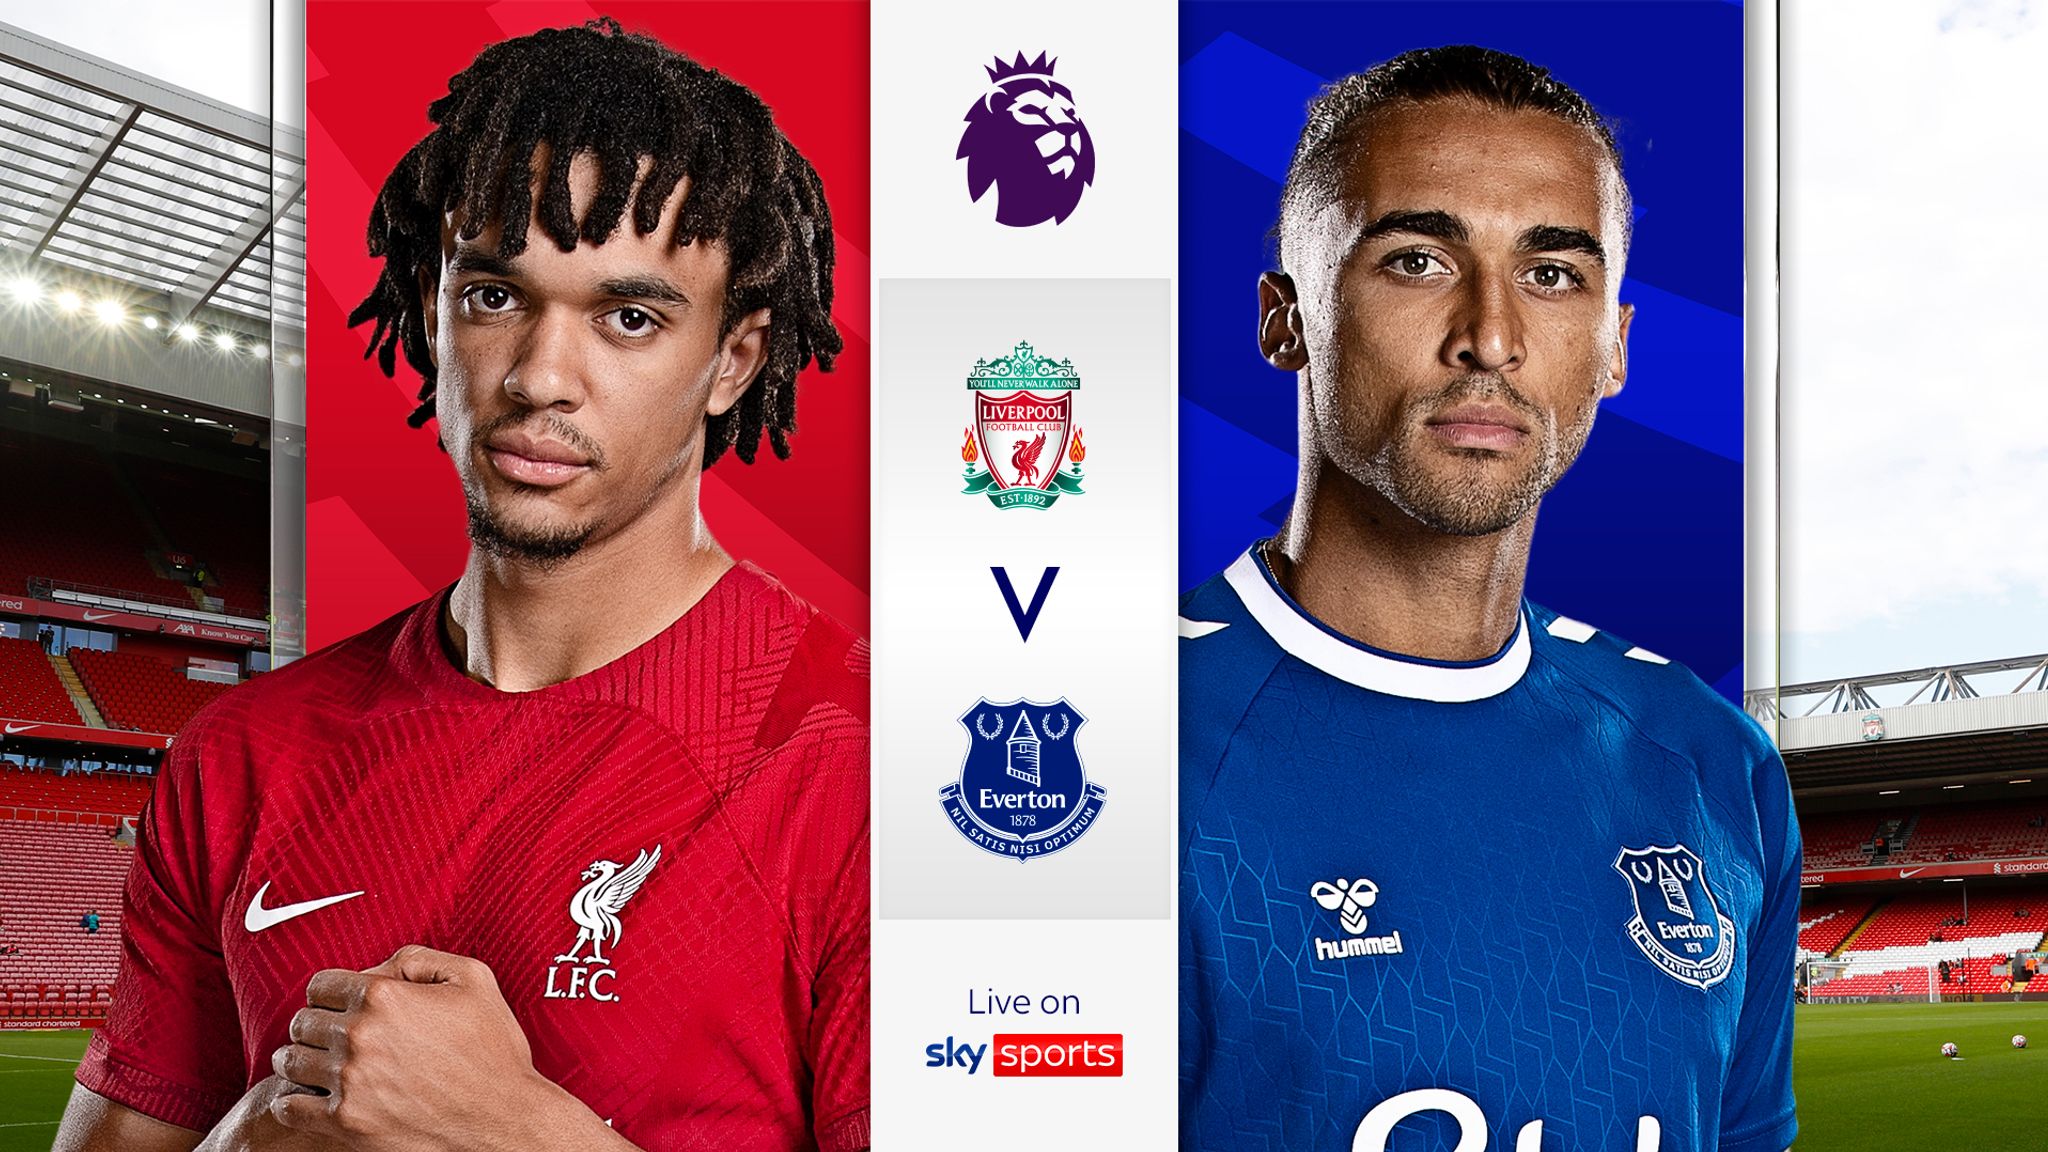 Liverpool vs Everton Premier League Match Day 23